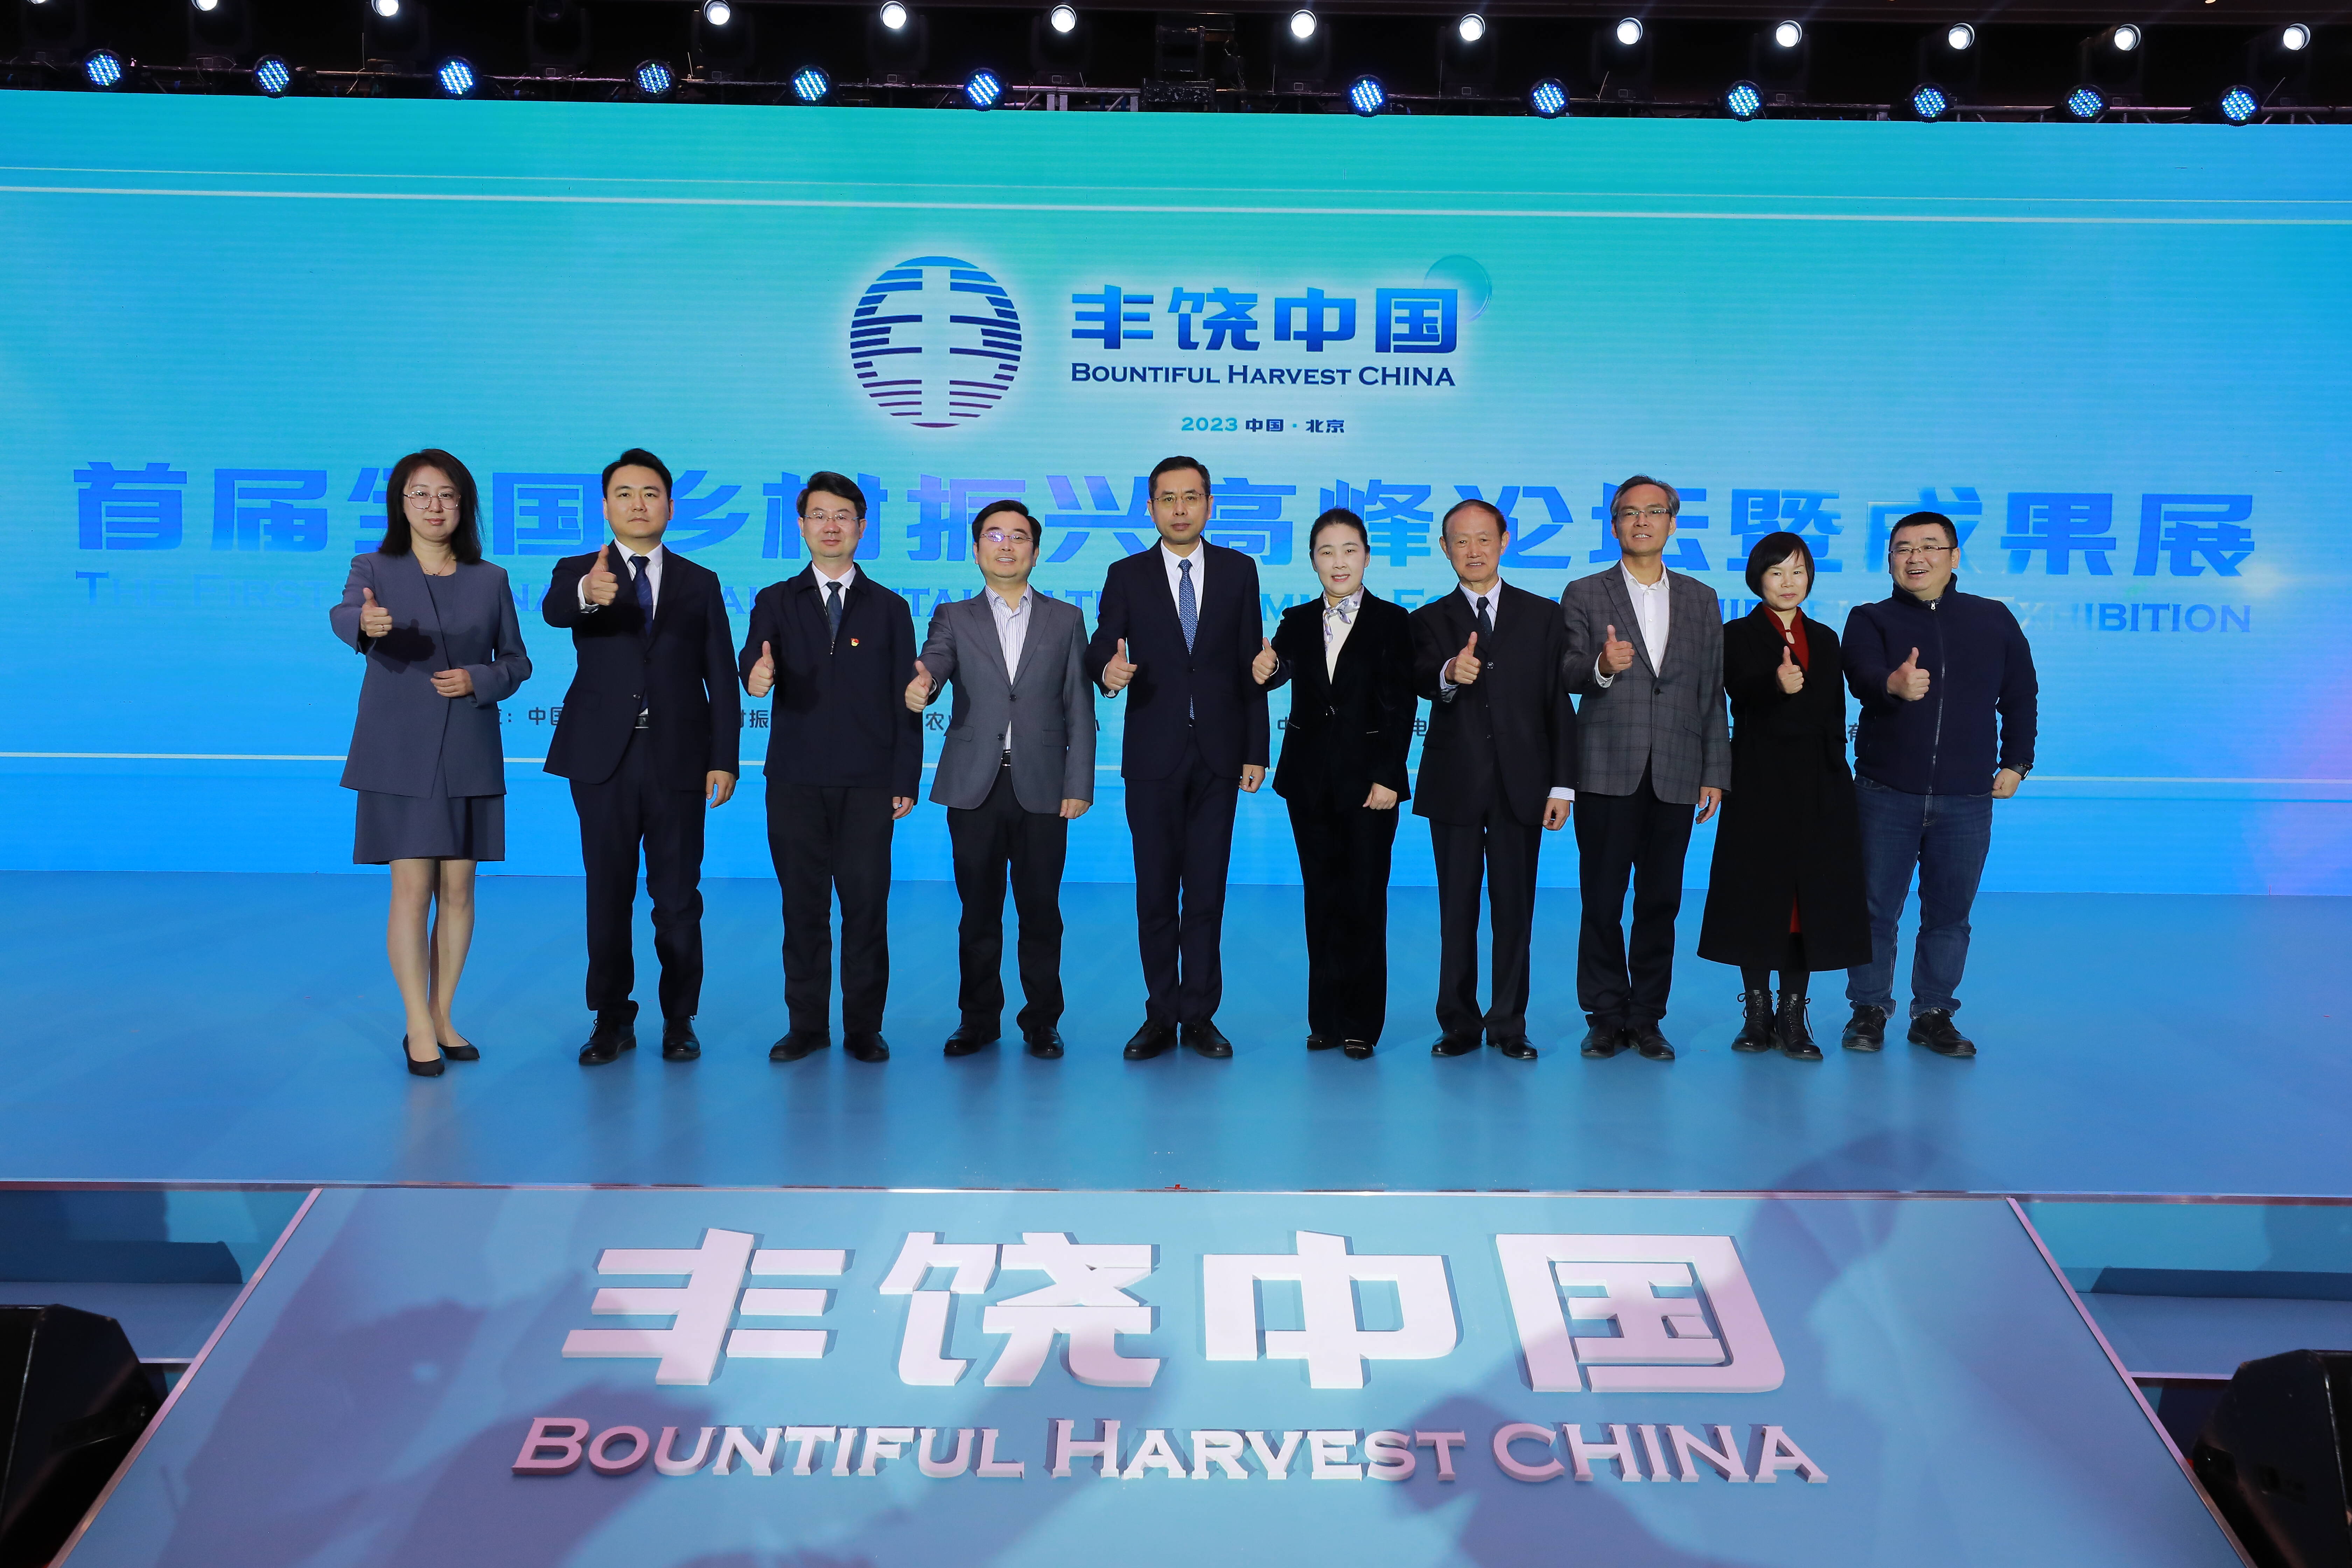 丰饶中国---首届全国乡村振兴高峰论坛暨成果展在北京怀柔顺利举行